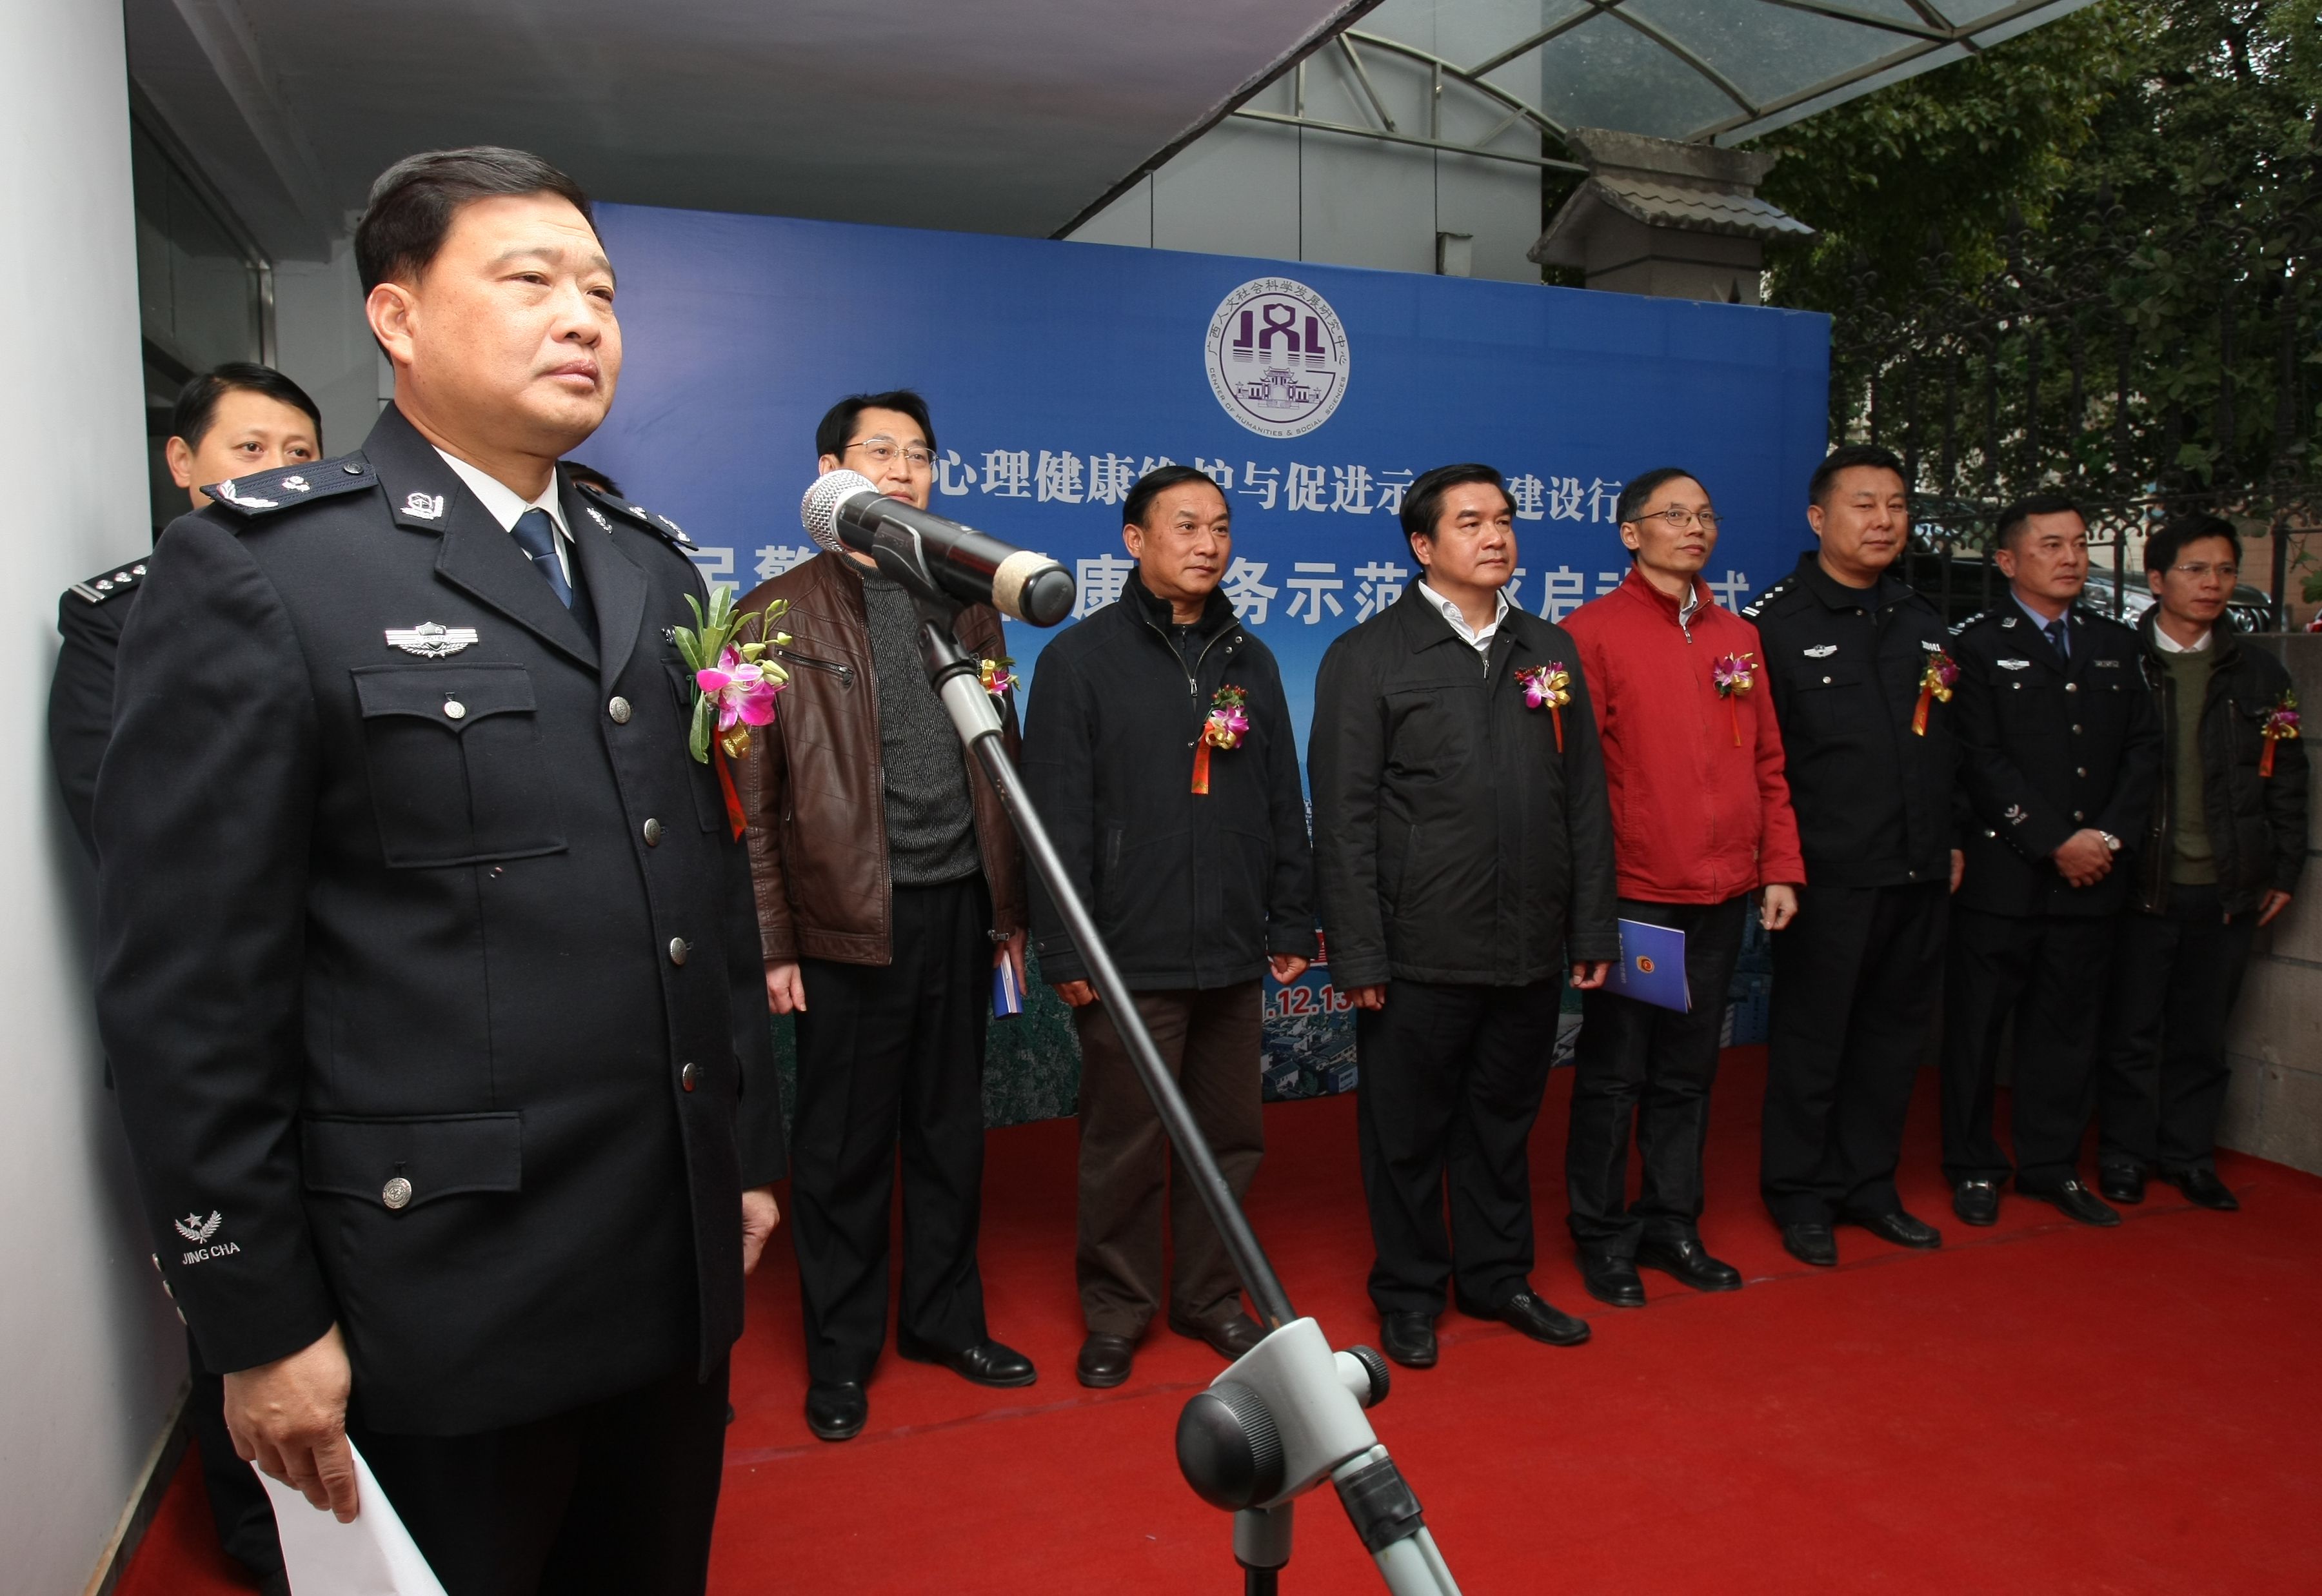 桂林市公安局副局长刘小平主持启动仪式